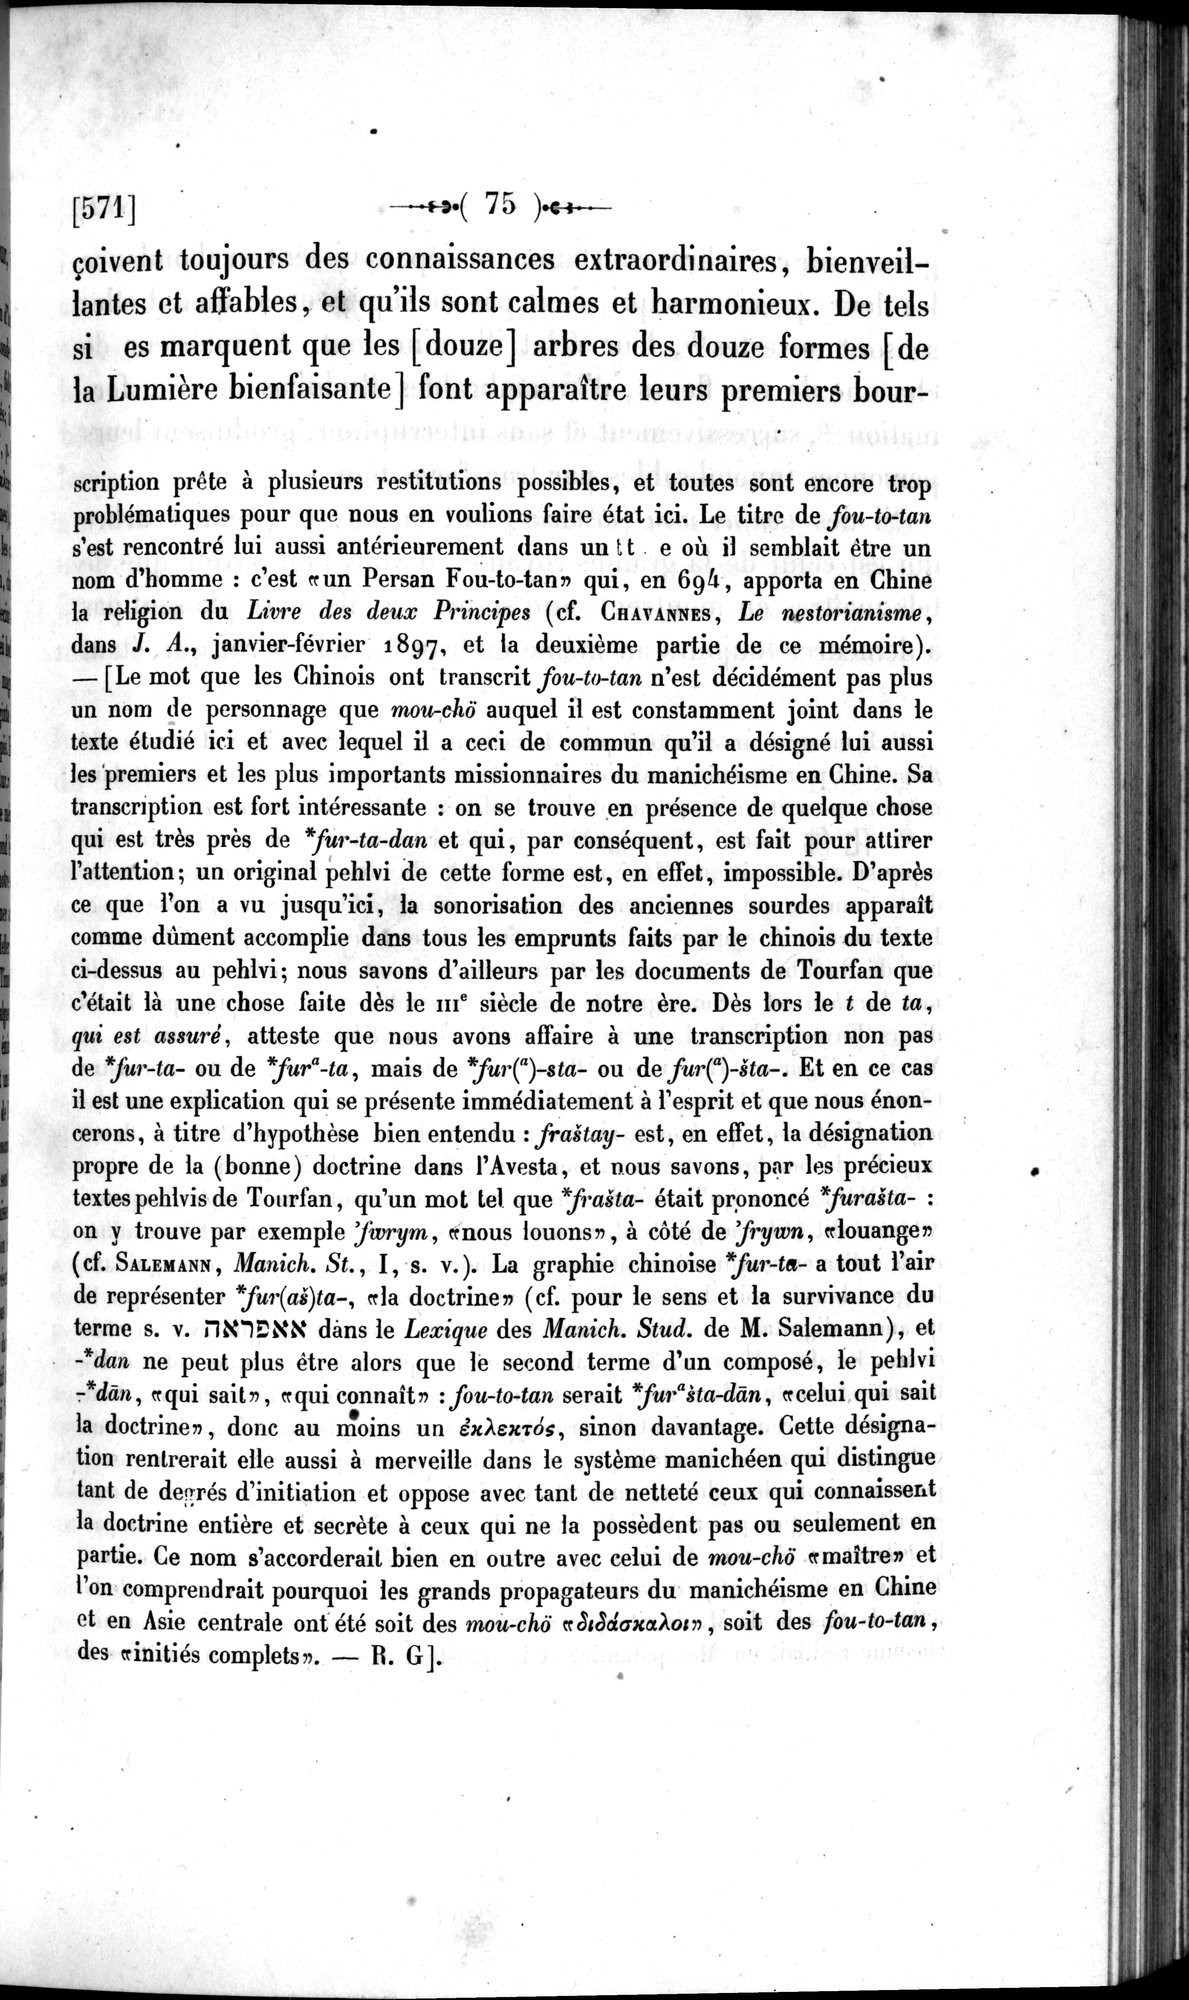 Un traité manichéen retrouvé en Chine : vol.1 / Page 85 (Grayscale High Resolution Image)